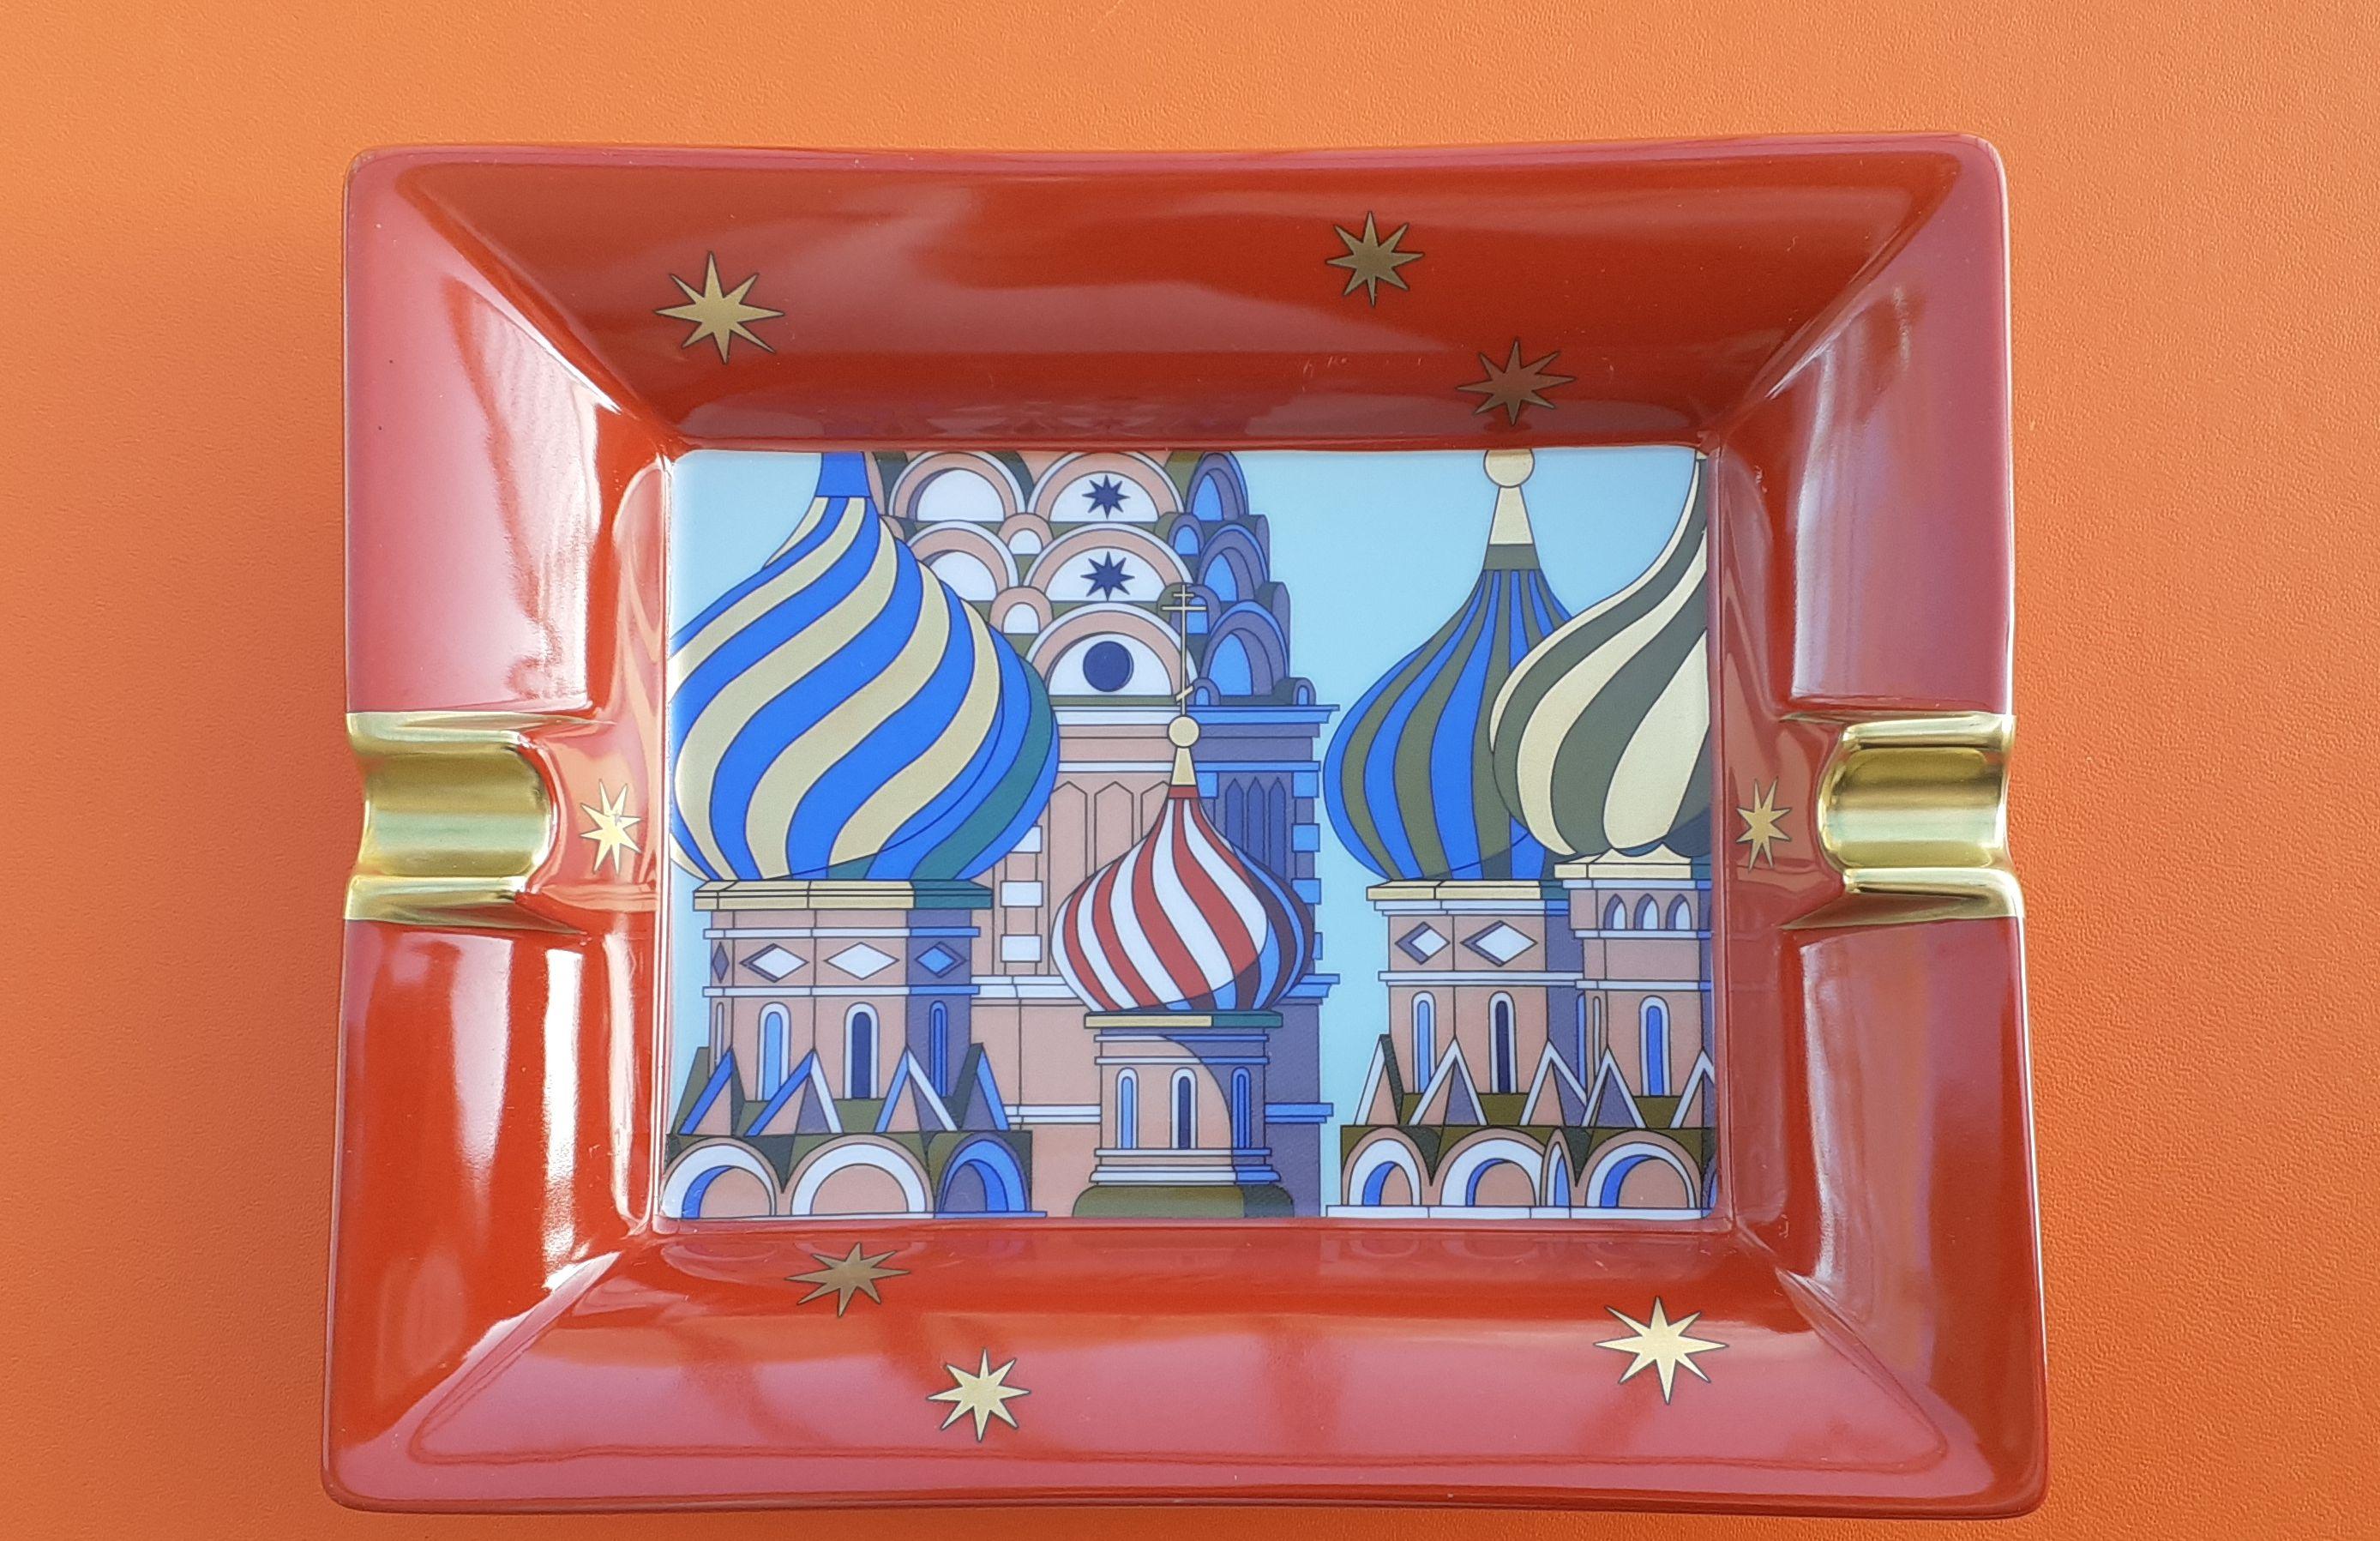 Wunderschöner und seltener authentischer Hermès Aschenbecher

Drucken: Kathedrale des Heiligen Basilius des Seligen in Moskau

Muster: Russische Dächer

Aus der Sammlung 